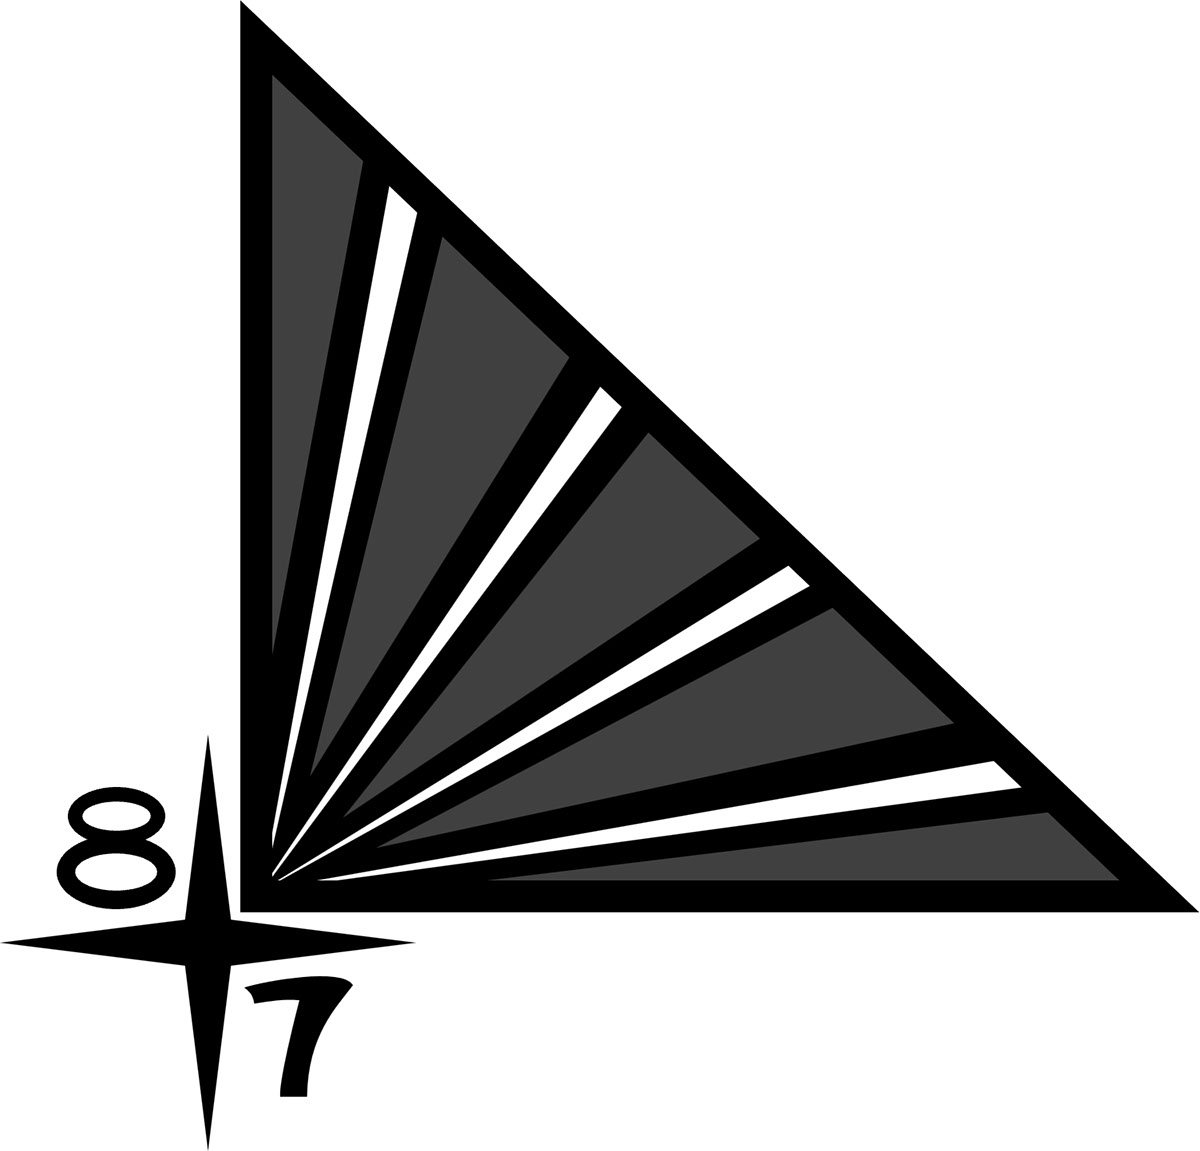 Corner Shards logo rendition image